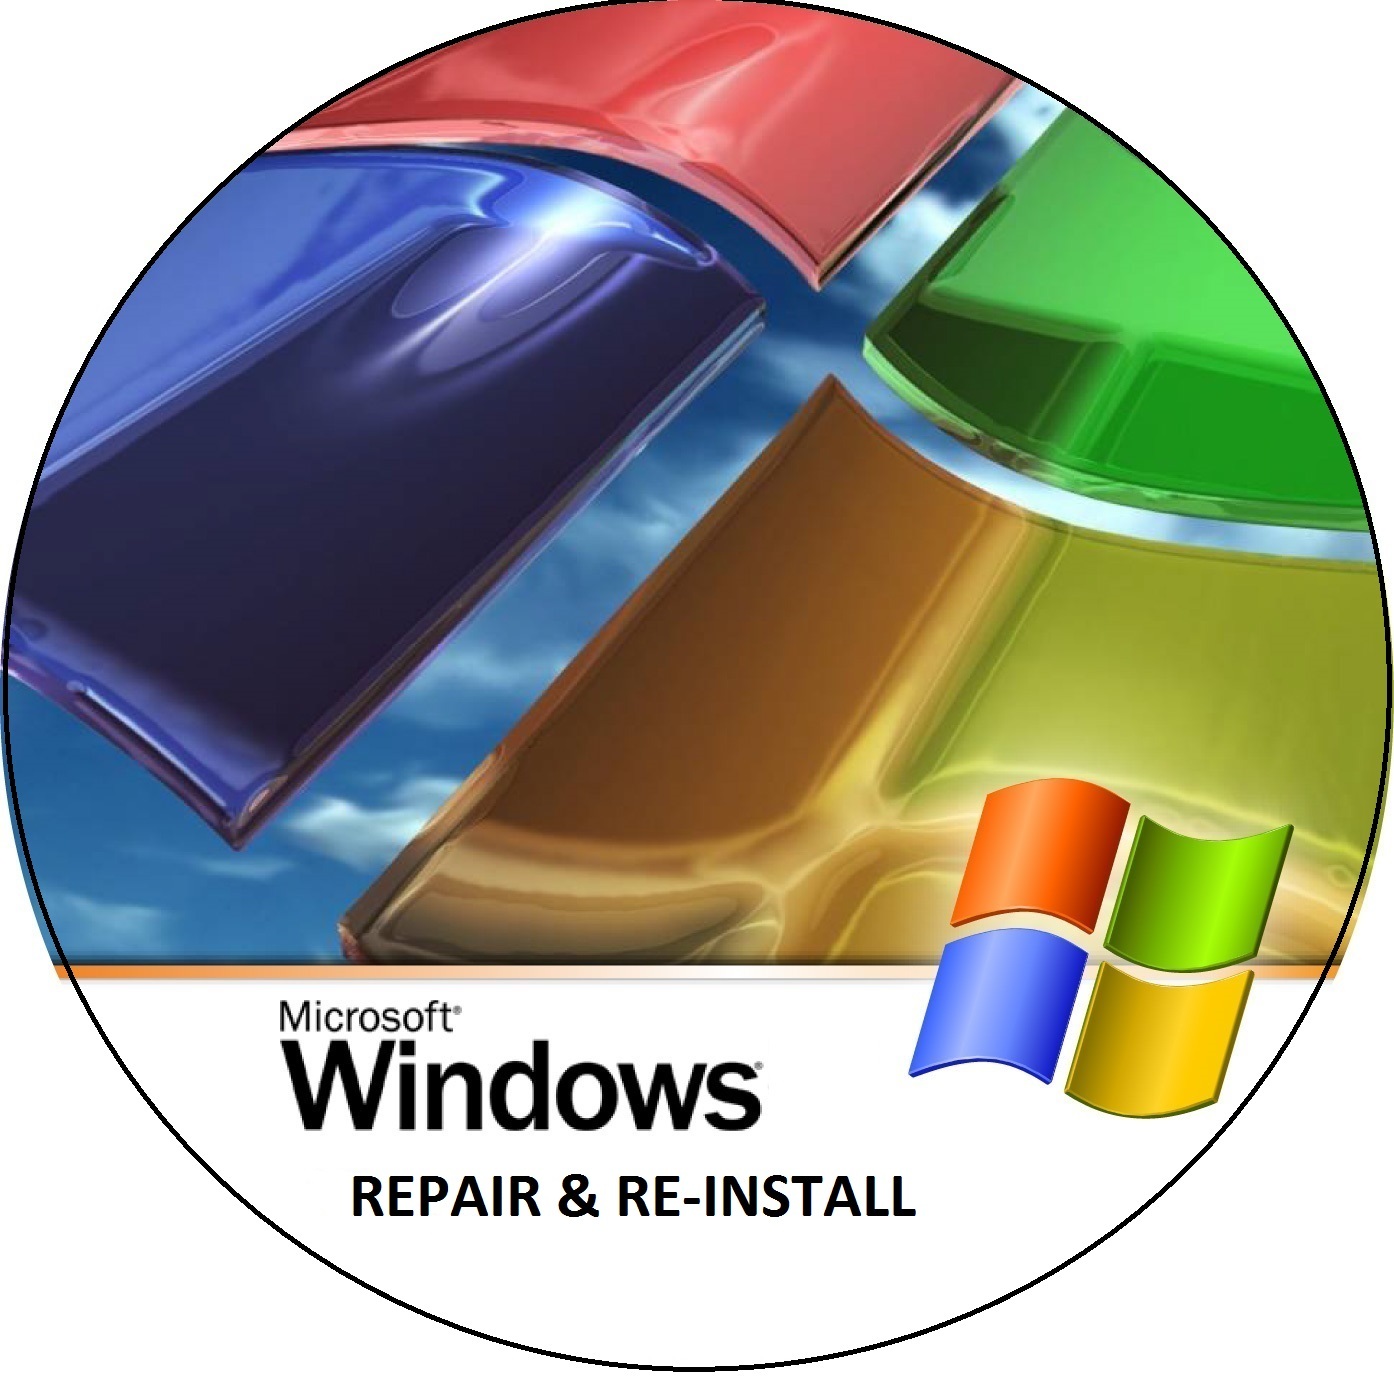 download windows 7 installation disc